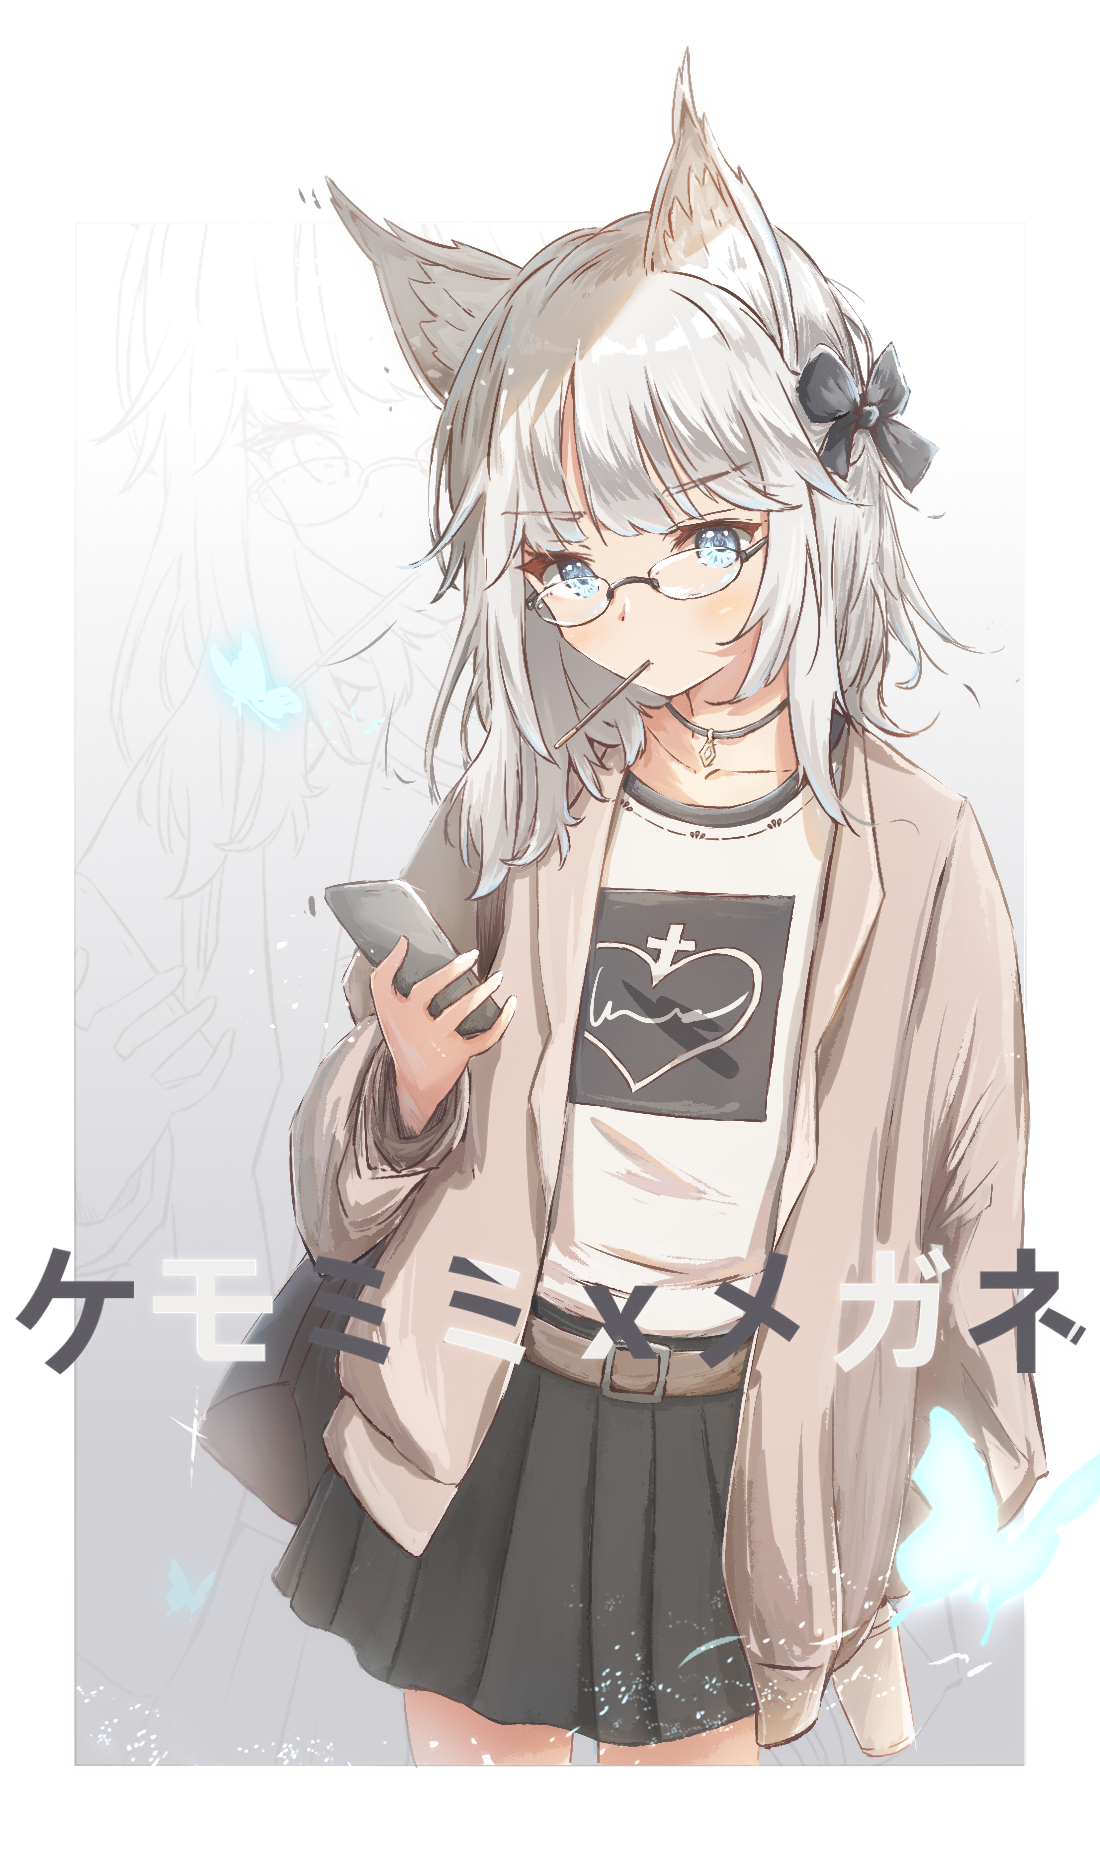 Anime 1100x1874 anime anime girls digital art artwork portrait display 2D Ddmikki fox girl silver hair blue eyes glasses